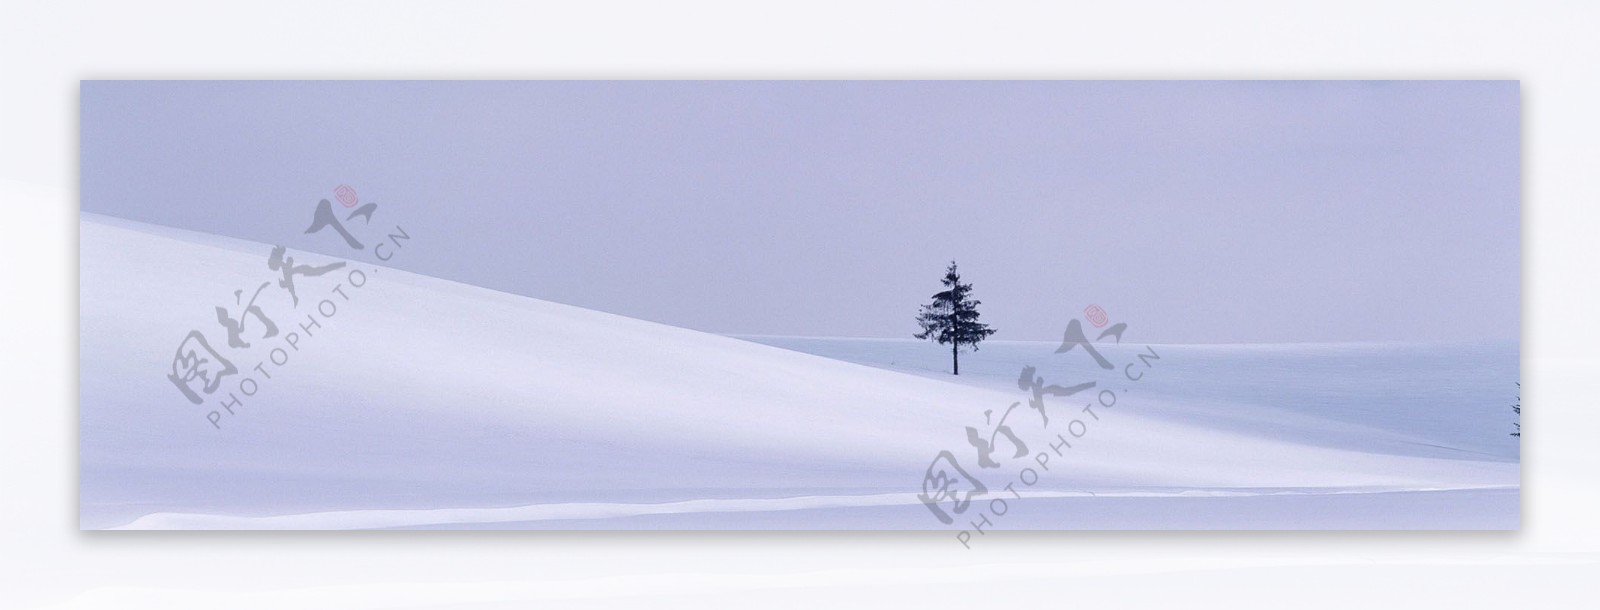 淘宝冬日雪景背景图片素材29